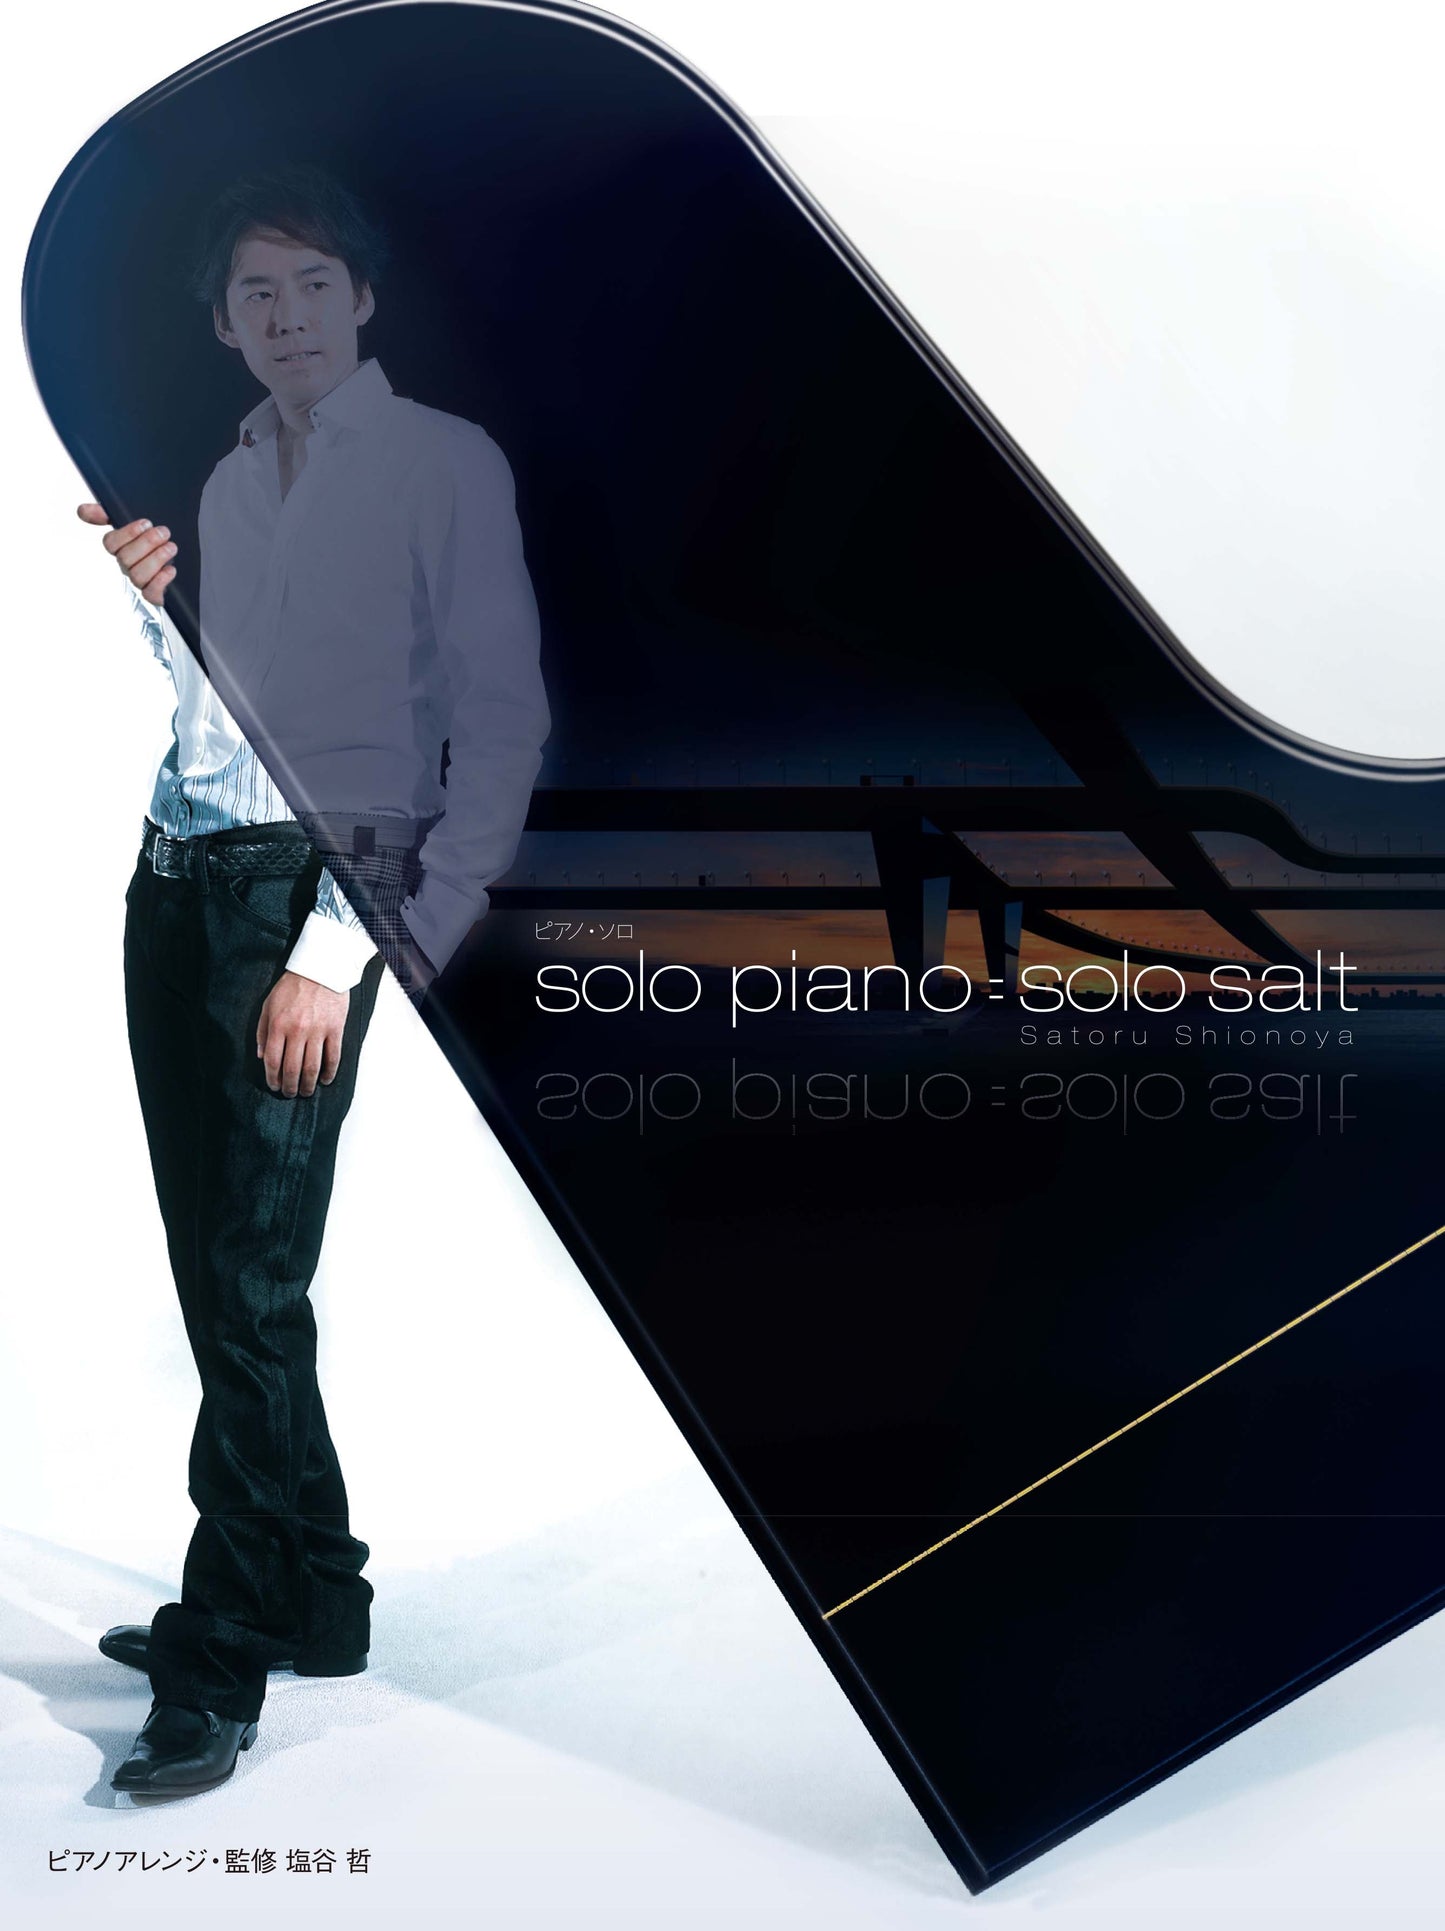 ピアノソロ 塩谷哲 「solo piano=solo salt」